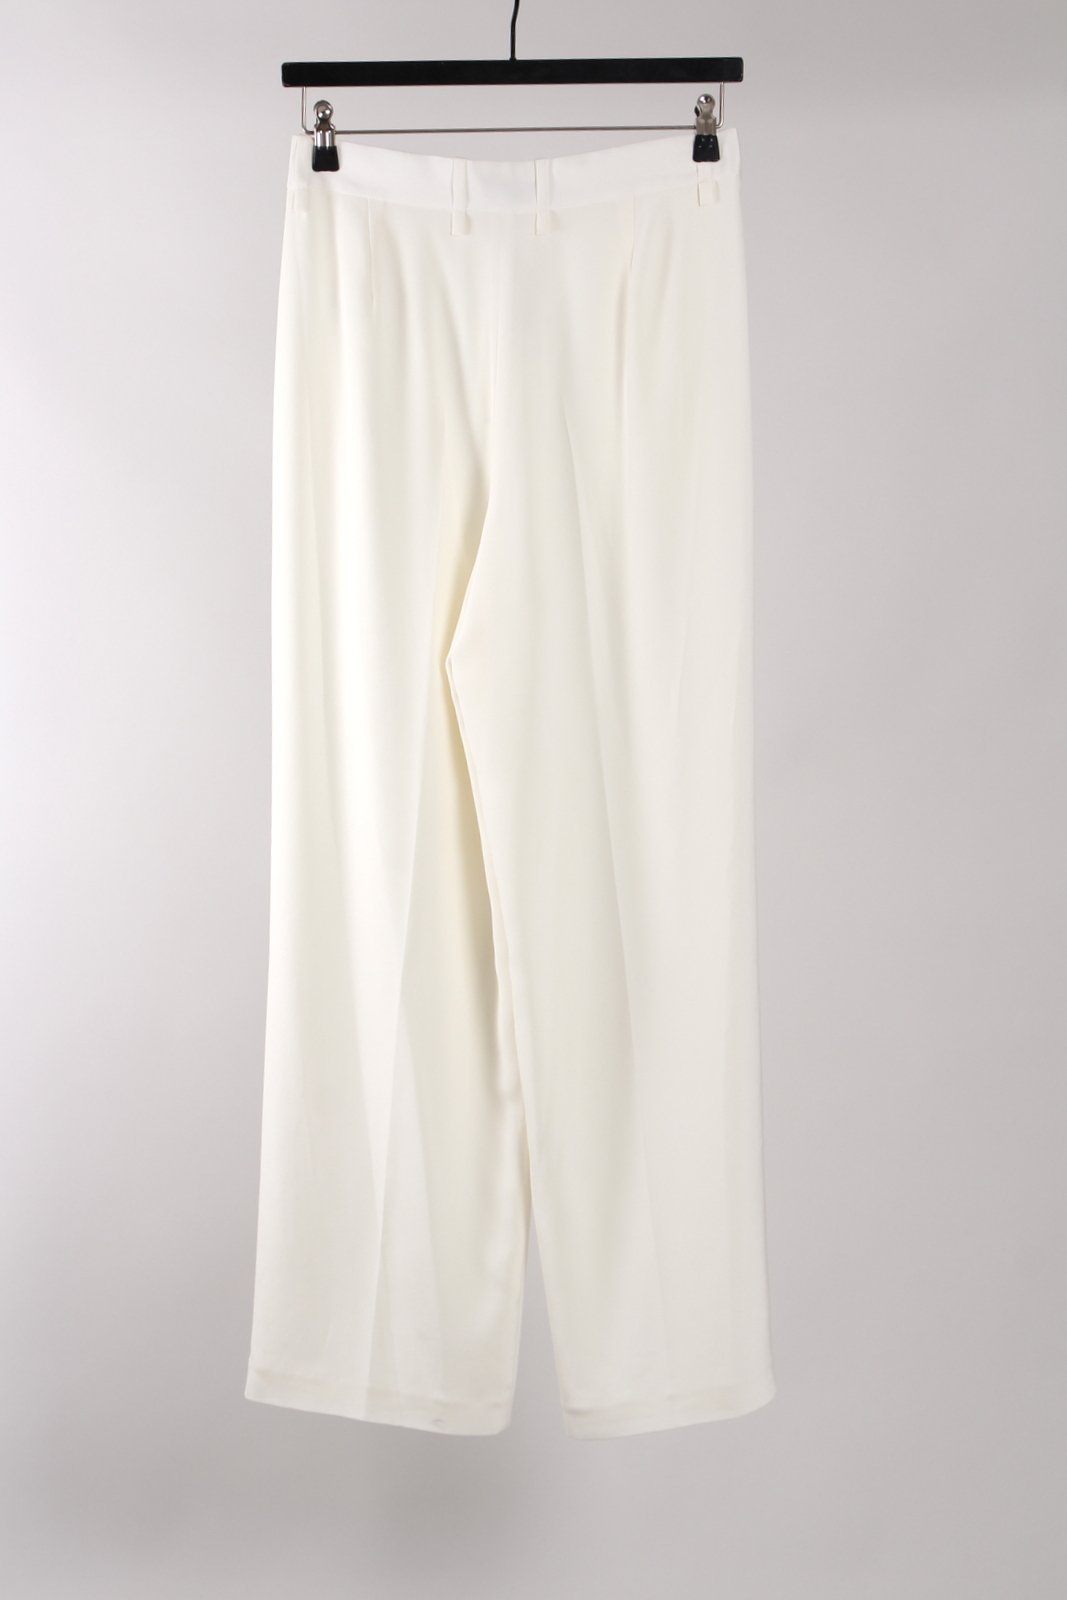 Pantalon Pantalon large soie blanche Jean Paul Knott vendu par Bleu Natier